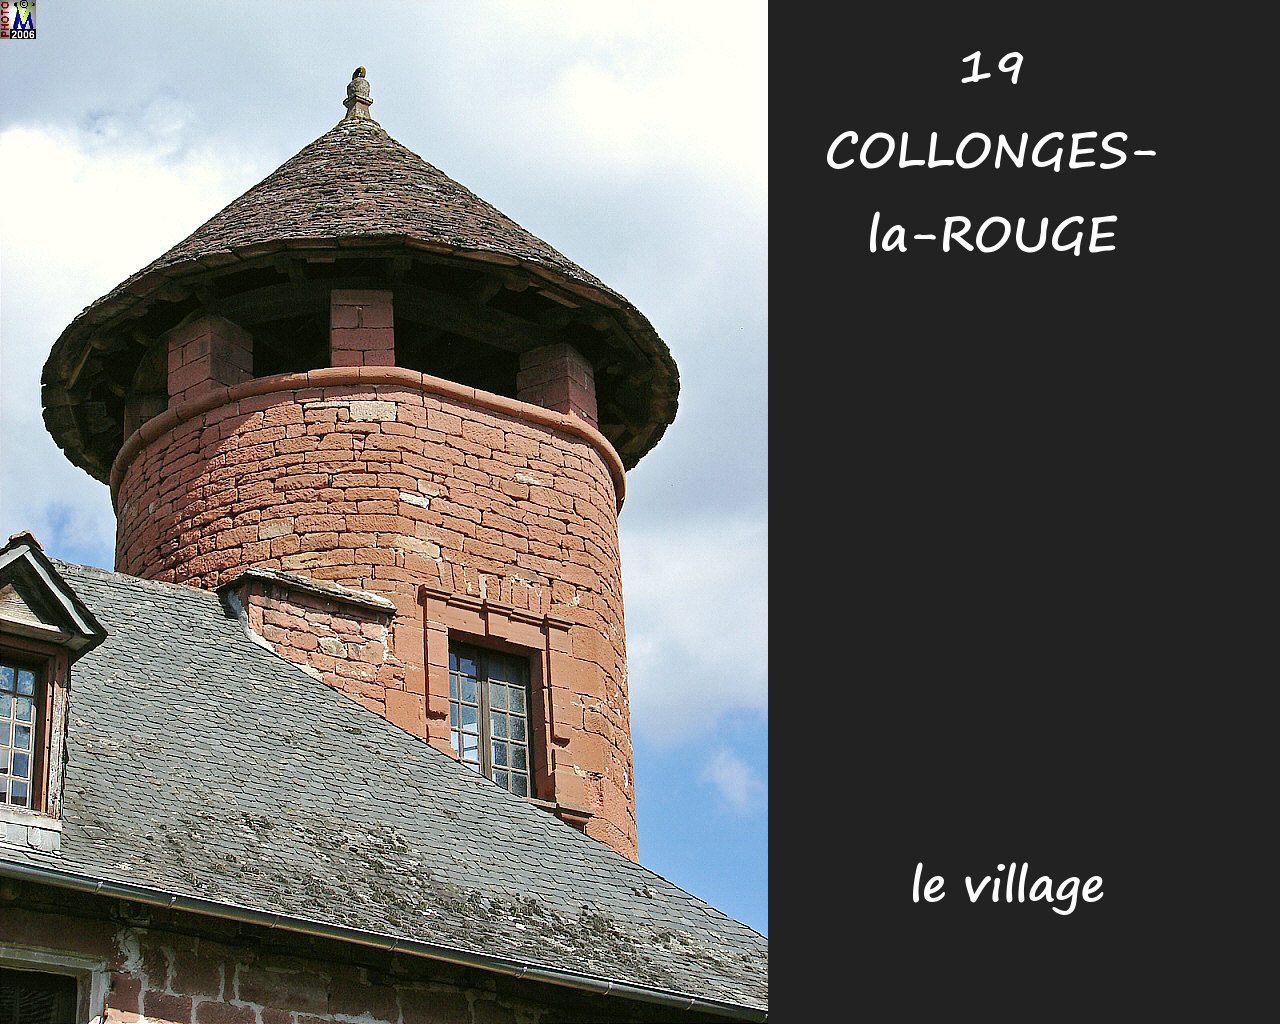 19COLLONGES-ROUGE_village_114.jpg